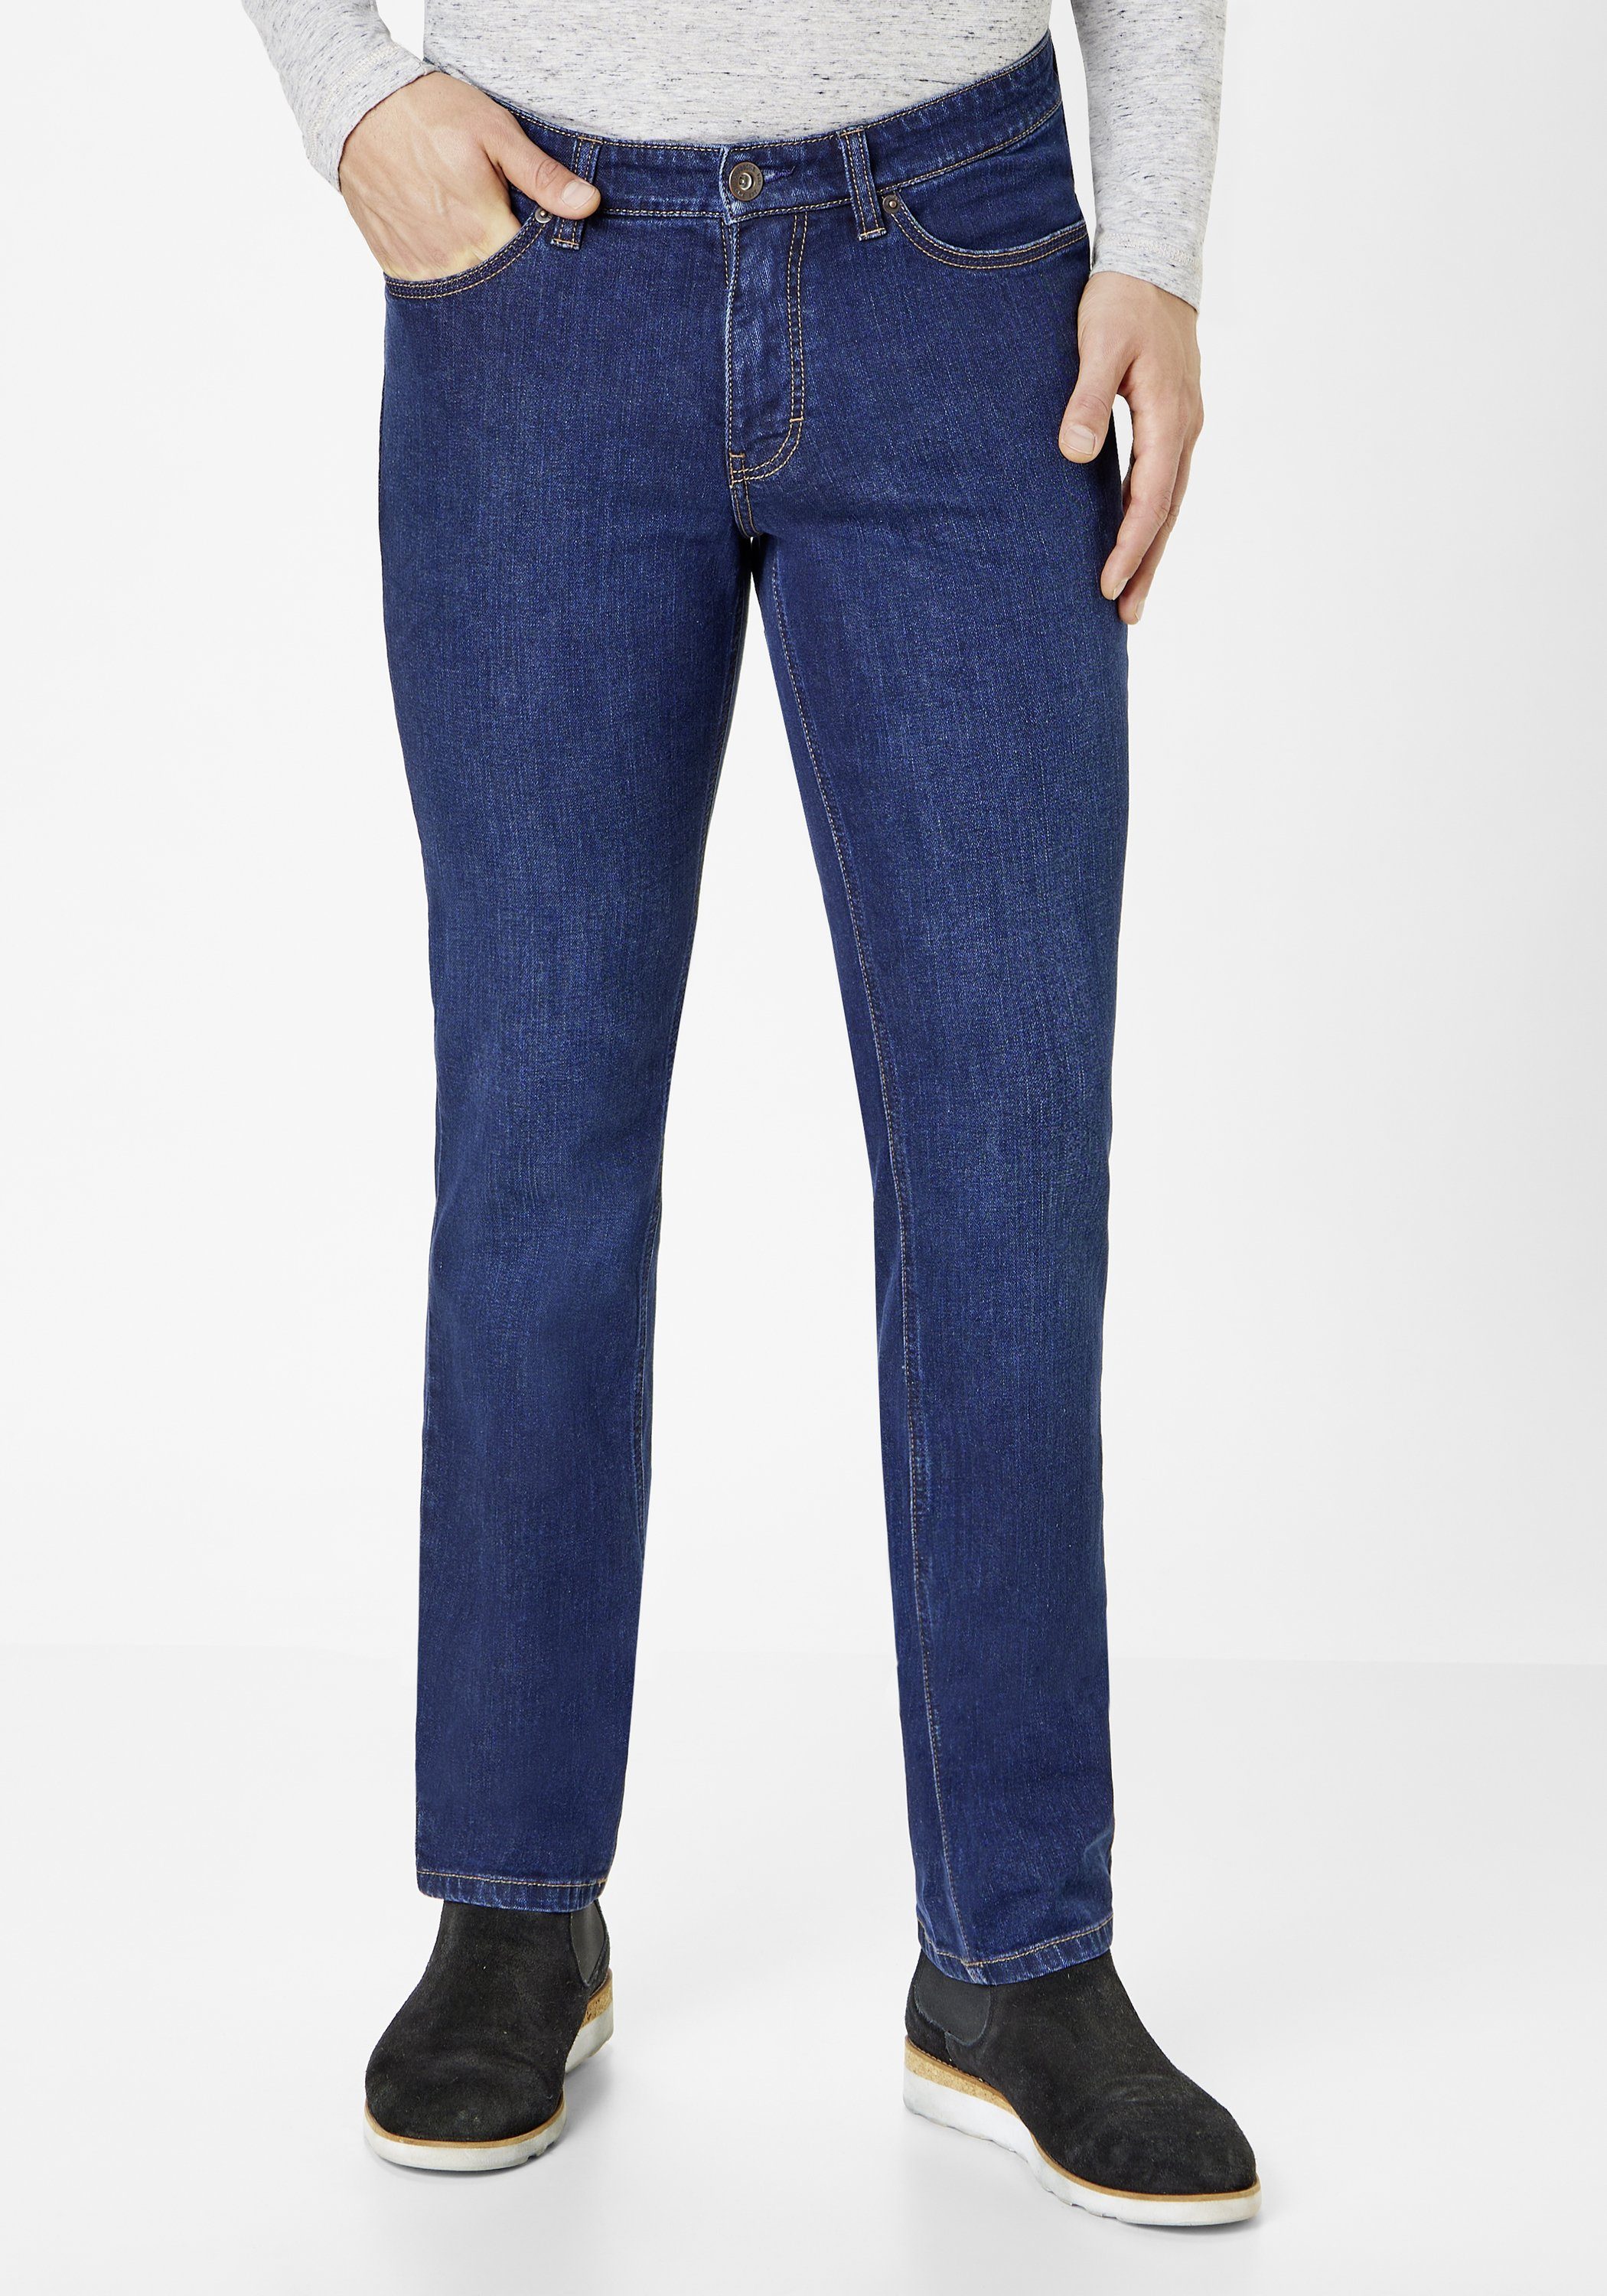 Paddock's Slim-fit-Jeans PIPE Elastische Slim-Fit Jeans PIPE dark stone used